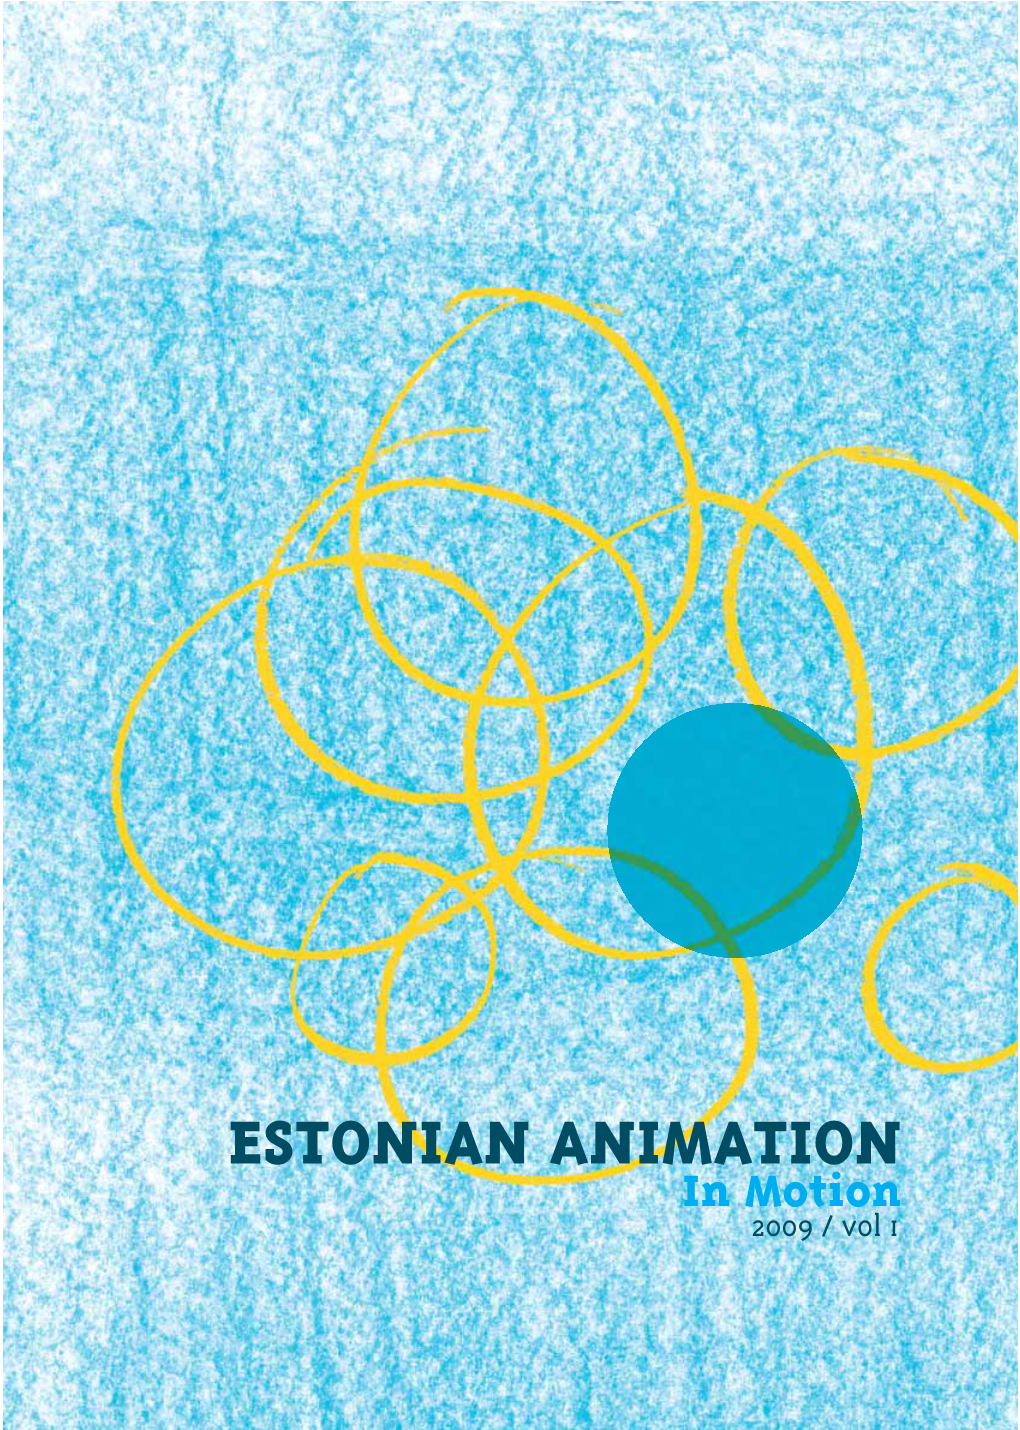 ESTONIAN ANIMATION in Motion 2009 / Vol 1 “Estonia Is a Little Big Nation of Animation“ (Heikki Jokinen)